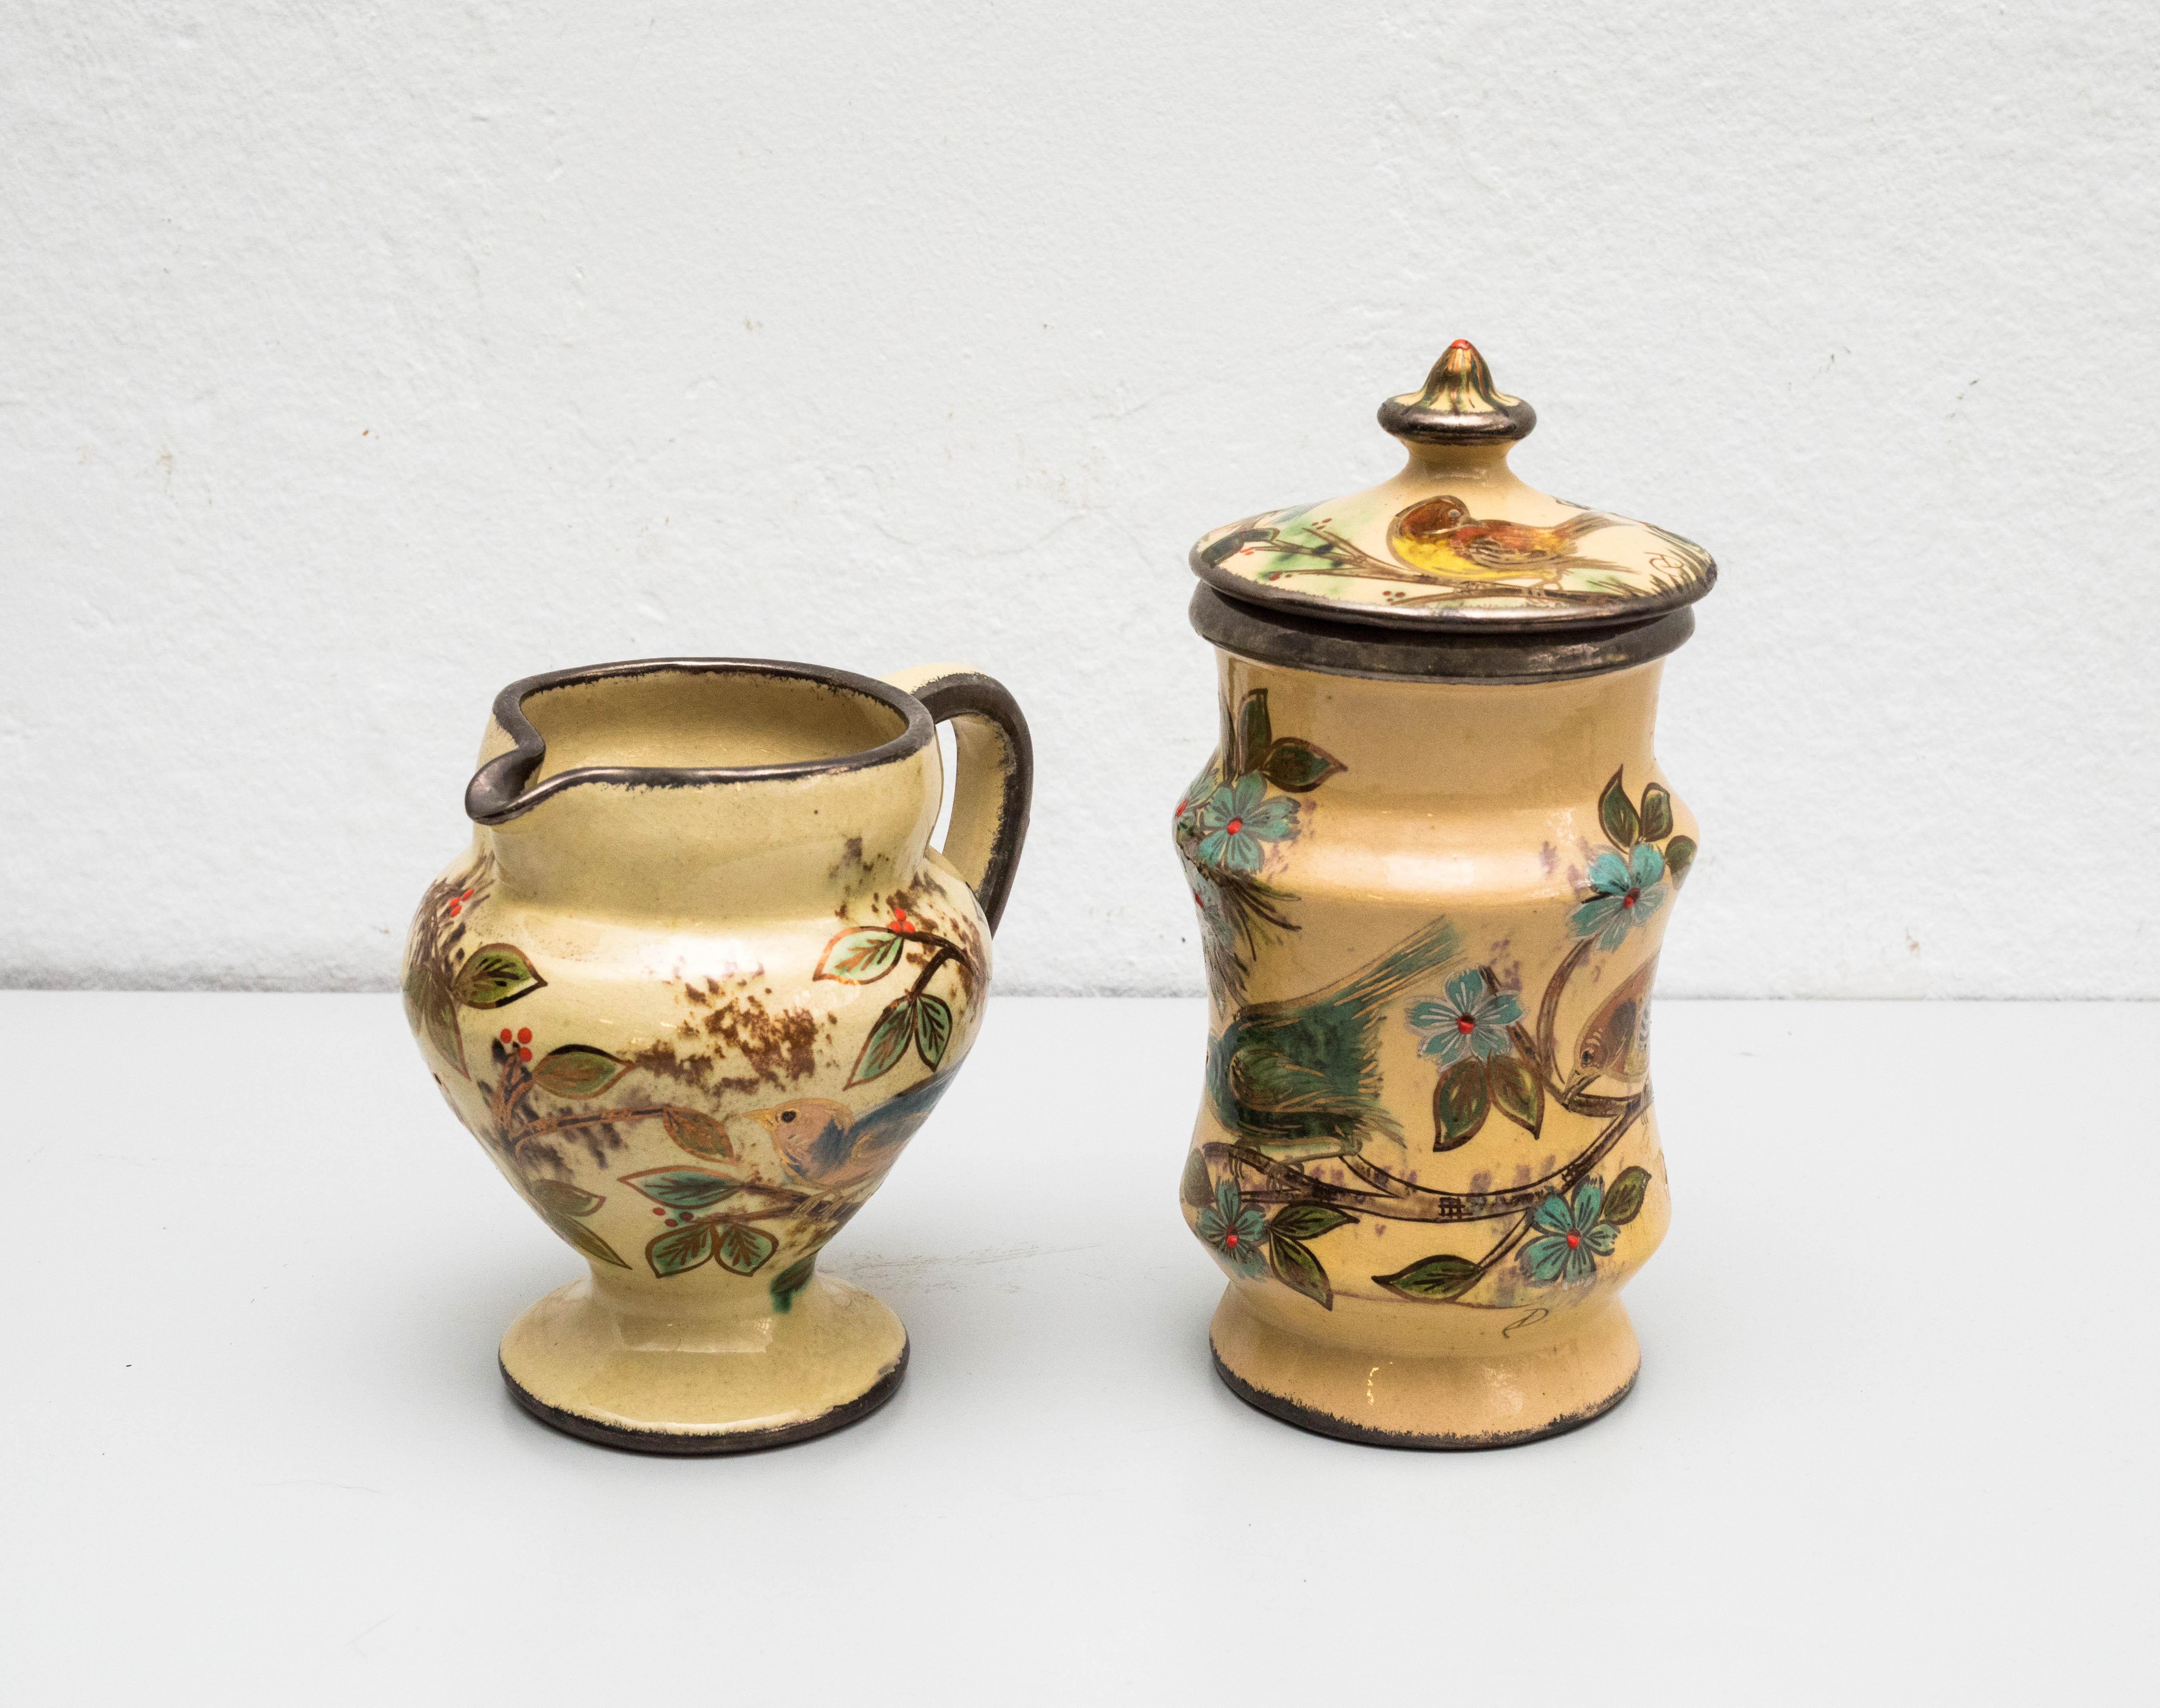 Ensemble de vases en céramique peints à la main par l'artiste catalan Diaz Costa, vers 1960.
Fabriqué en Espagne.
Signé.

En état original, avec une usure mineure correspondant à l'âge et à l'utilisation, préservant une belle patine.

Dimensions
H